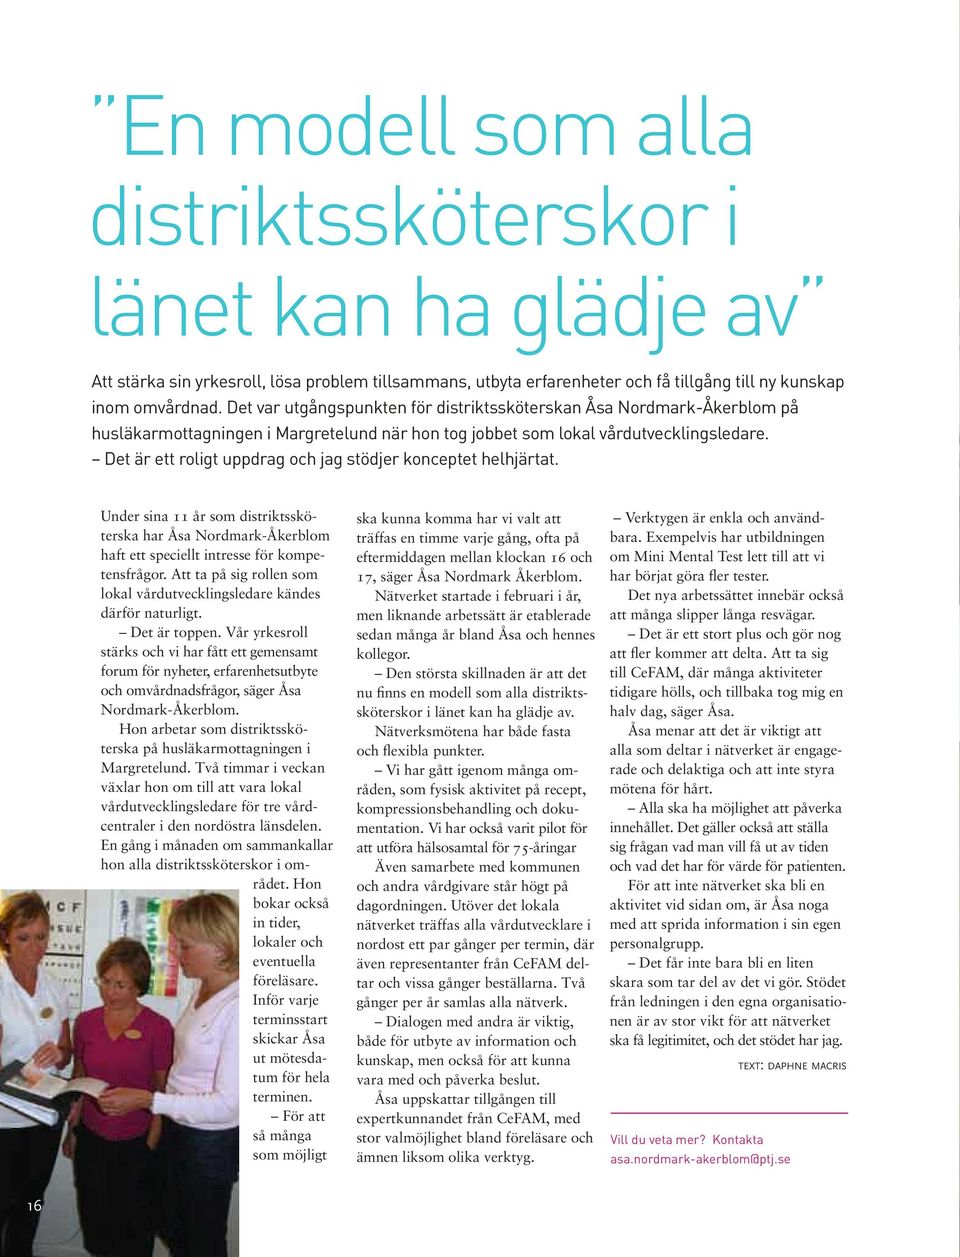 Det är ett roligt uppdrag och jag stödjer konceptet helhjärtat. Under sina 11 år som distriktssköterska har Åsa Nordmark-Åkerblom haft ett speciellt intresse för kompetensfrågor.